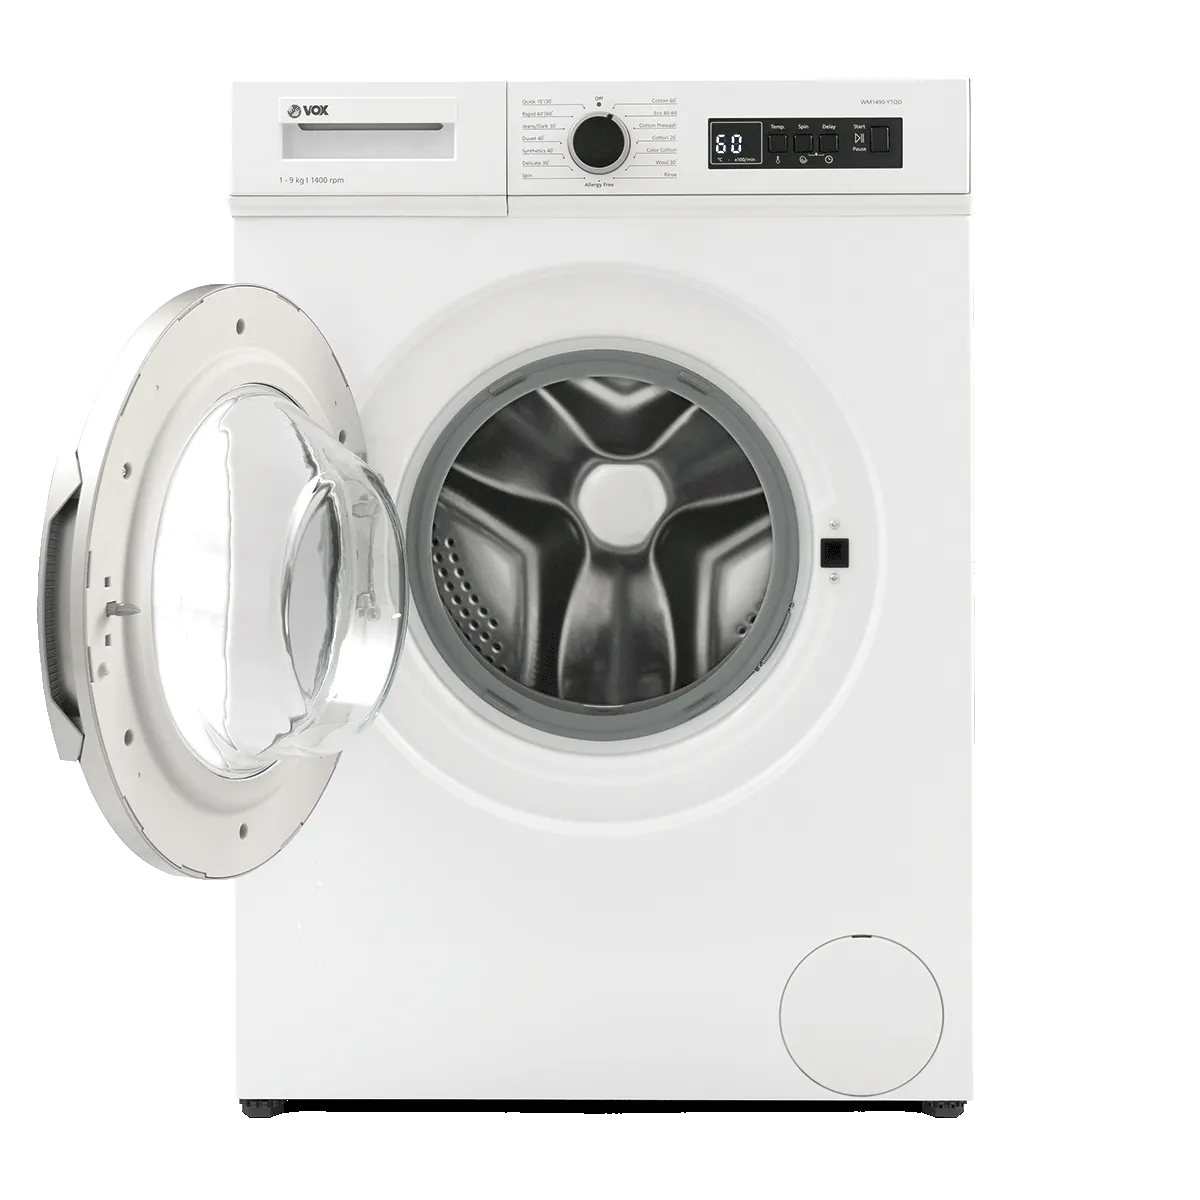 Washing machine WM1490-YTQD 